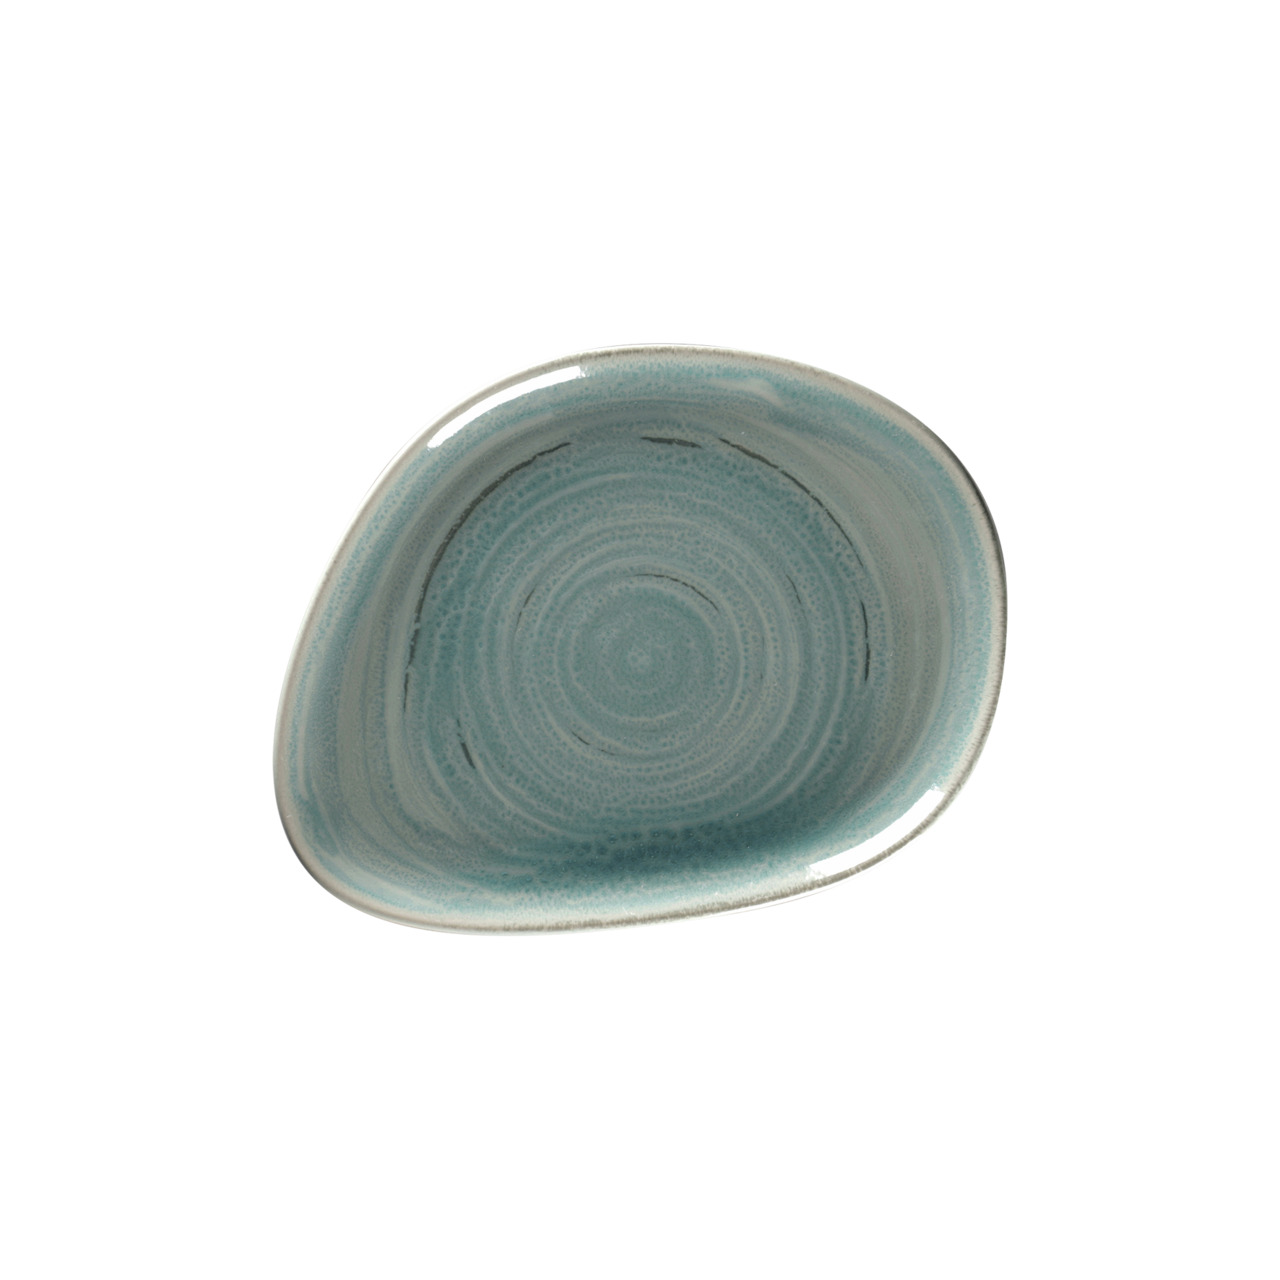 Spot, Teller flach organisch 219 x 165 mm sapphire blue